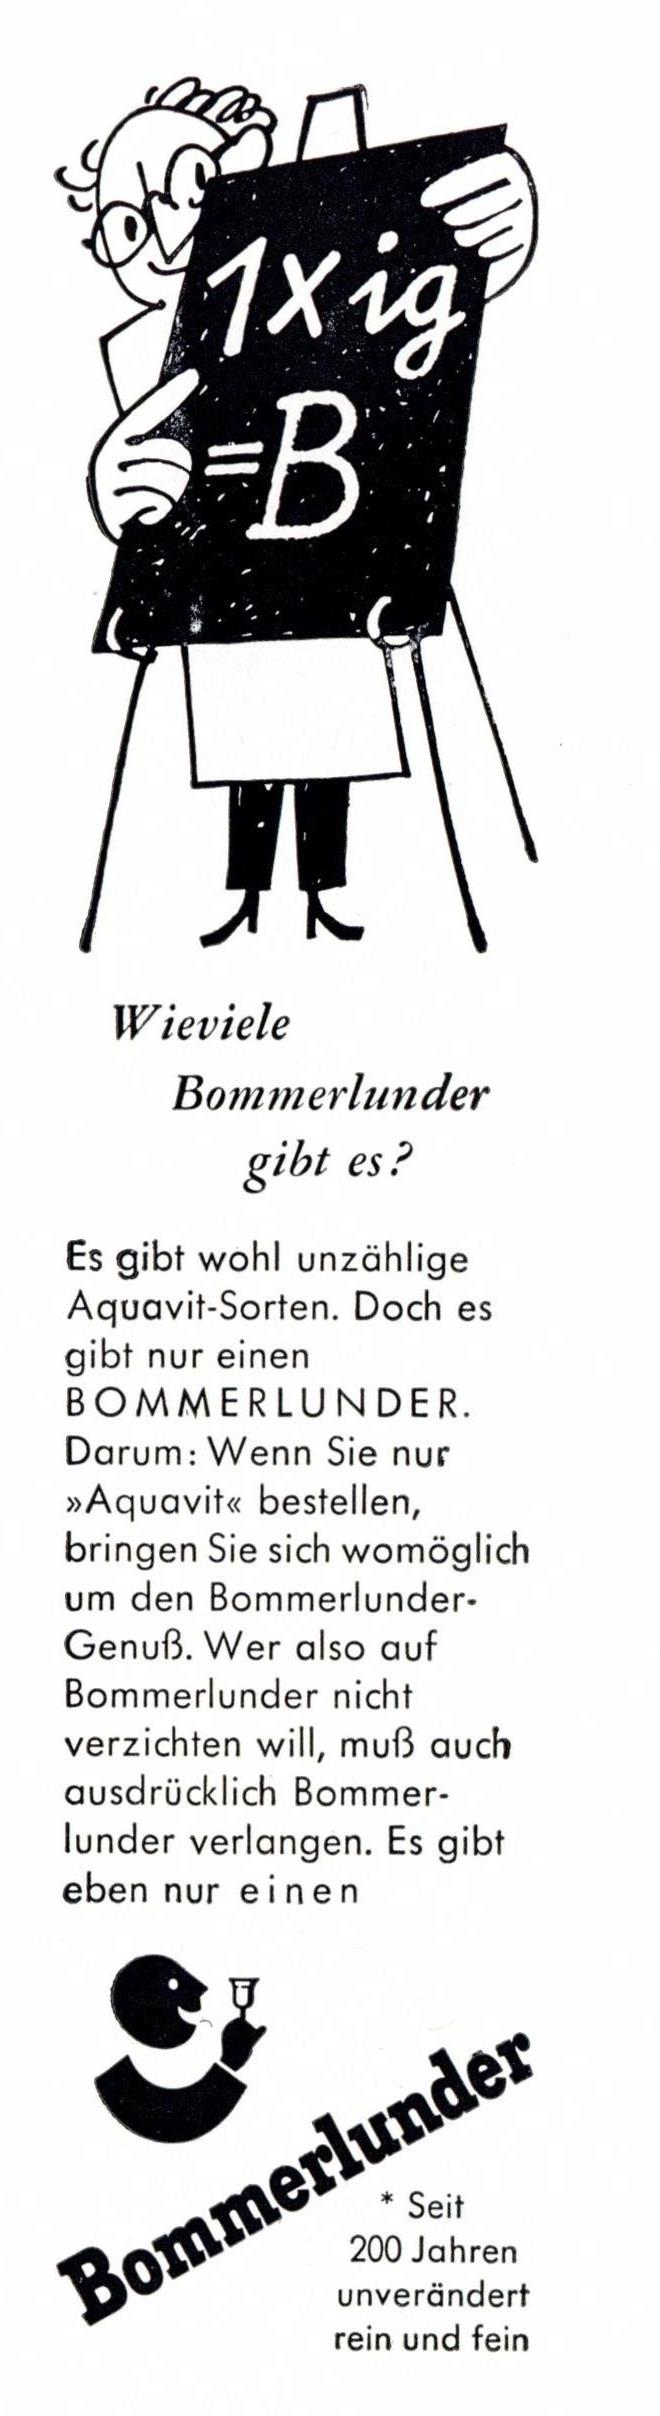 Bommerlunder 1961 0.jpg